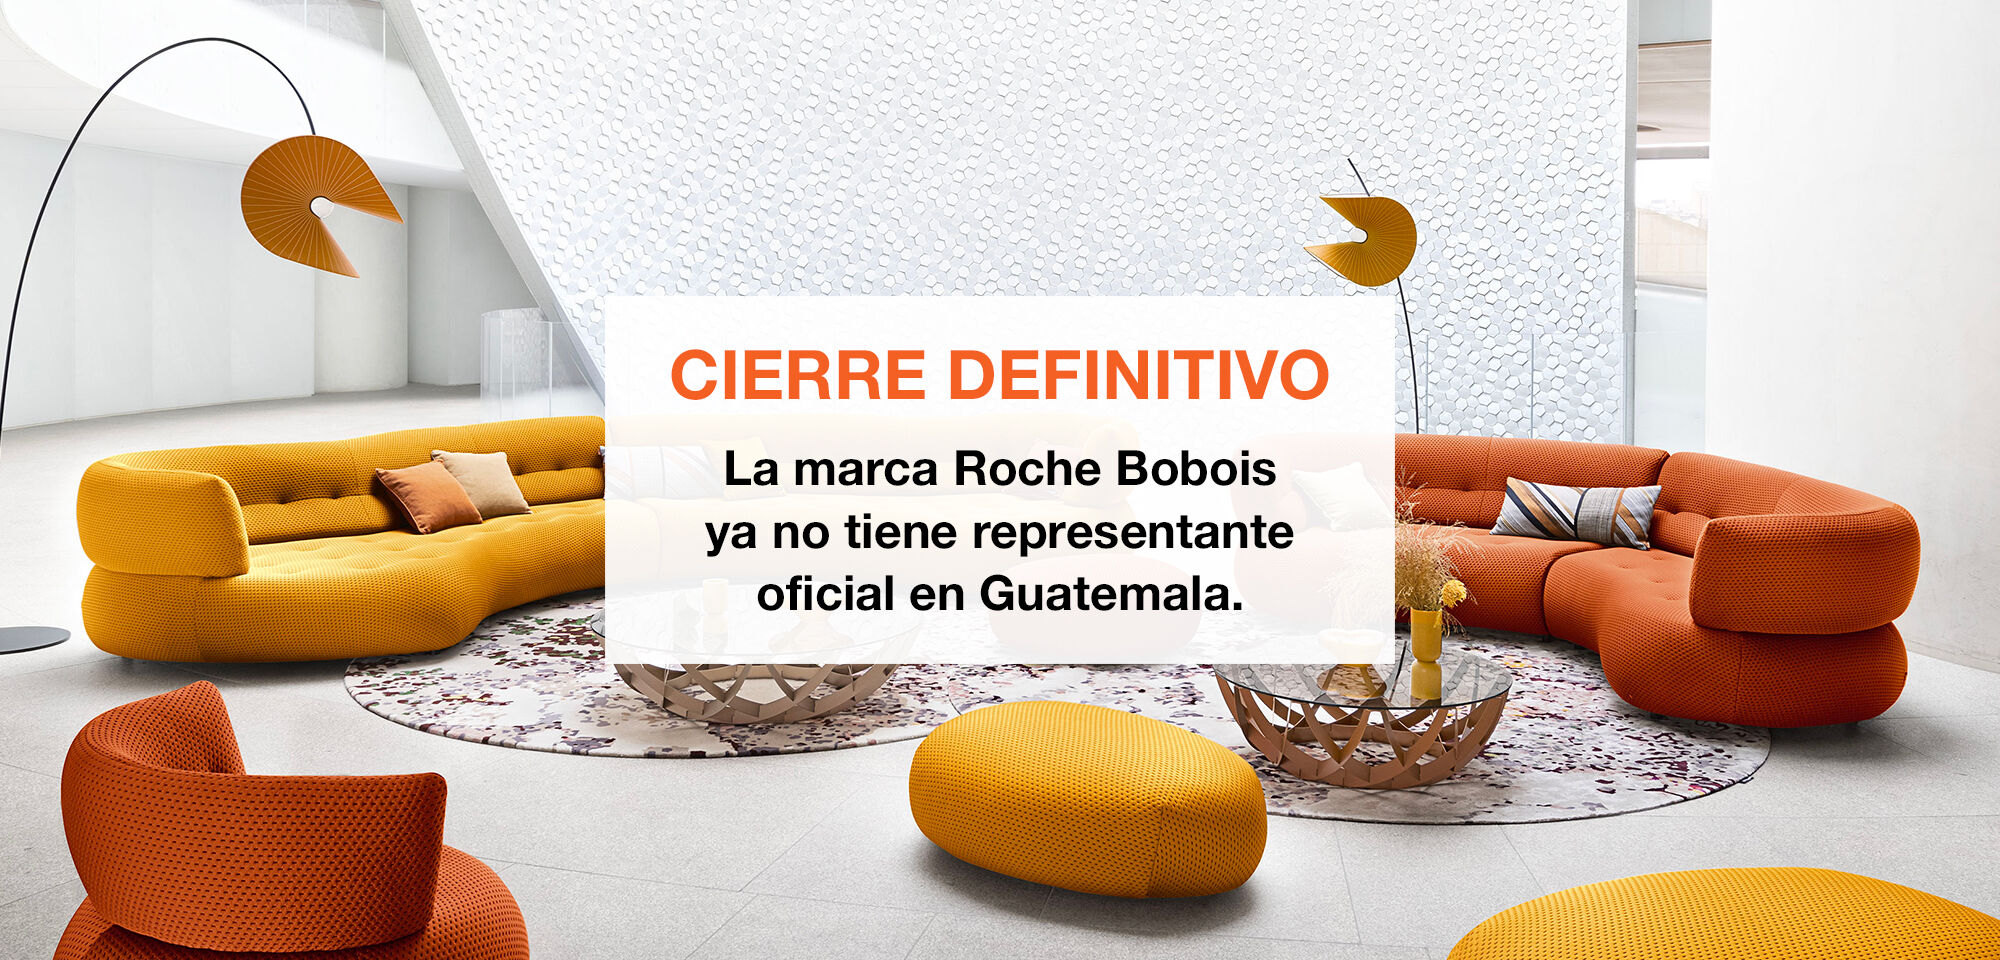 Cierre definitivo - La marca Roche Bobois ya no tiene representate oficial en Guatemala.